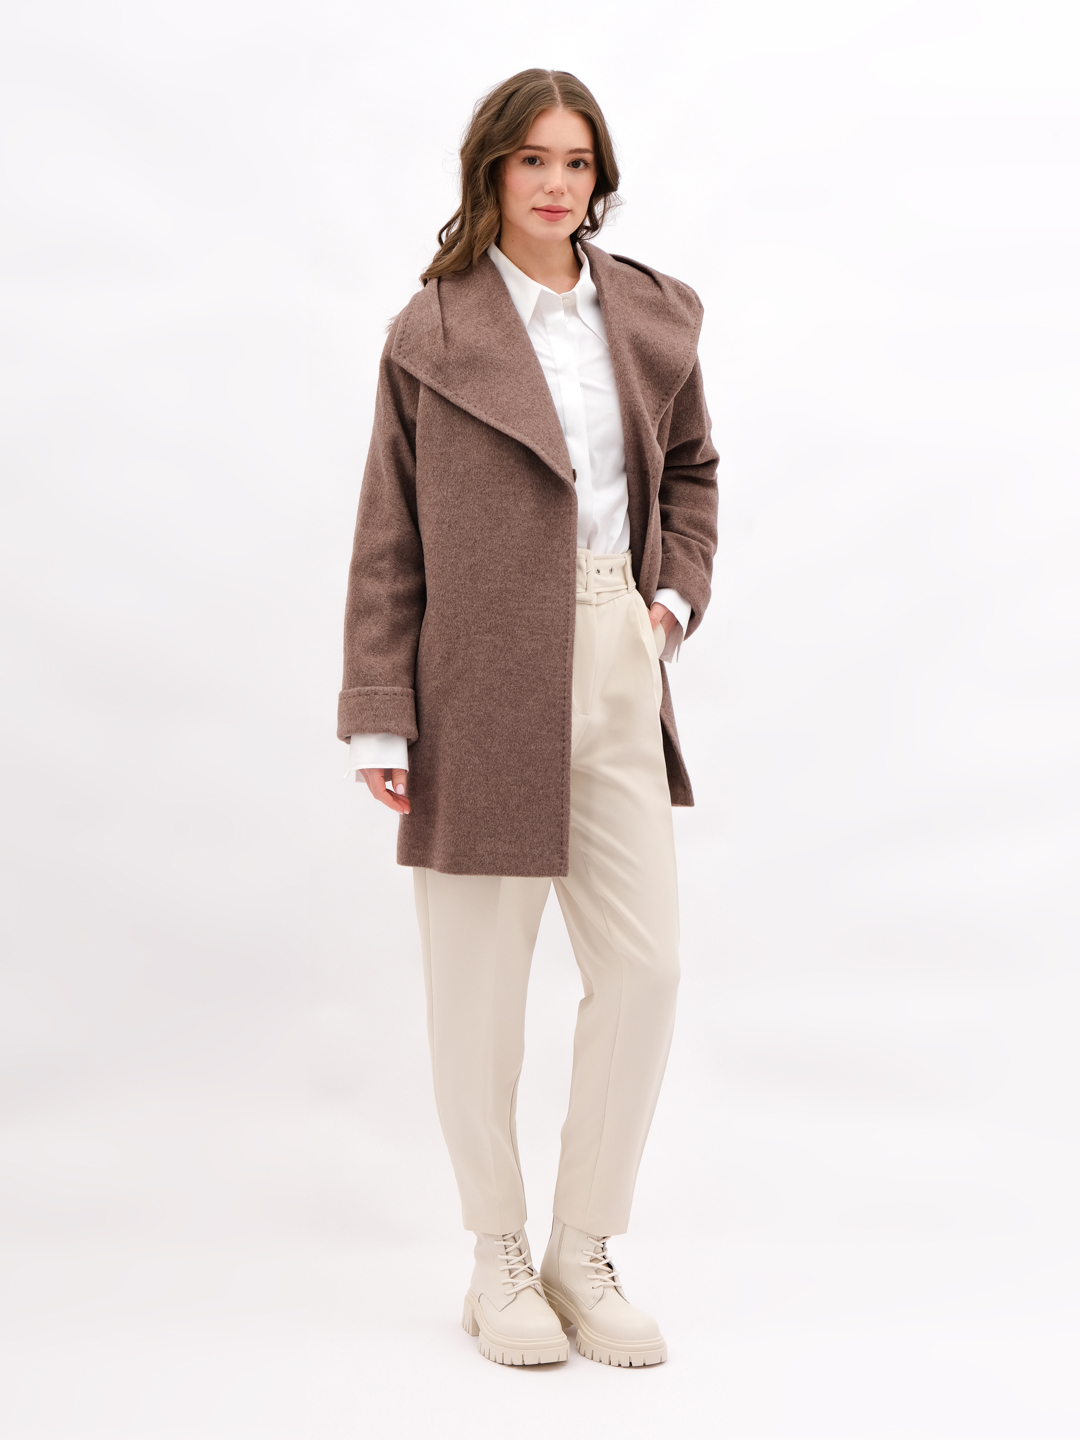 Пальто женское Trifo 7546 коричневое 52 RU